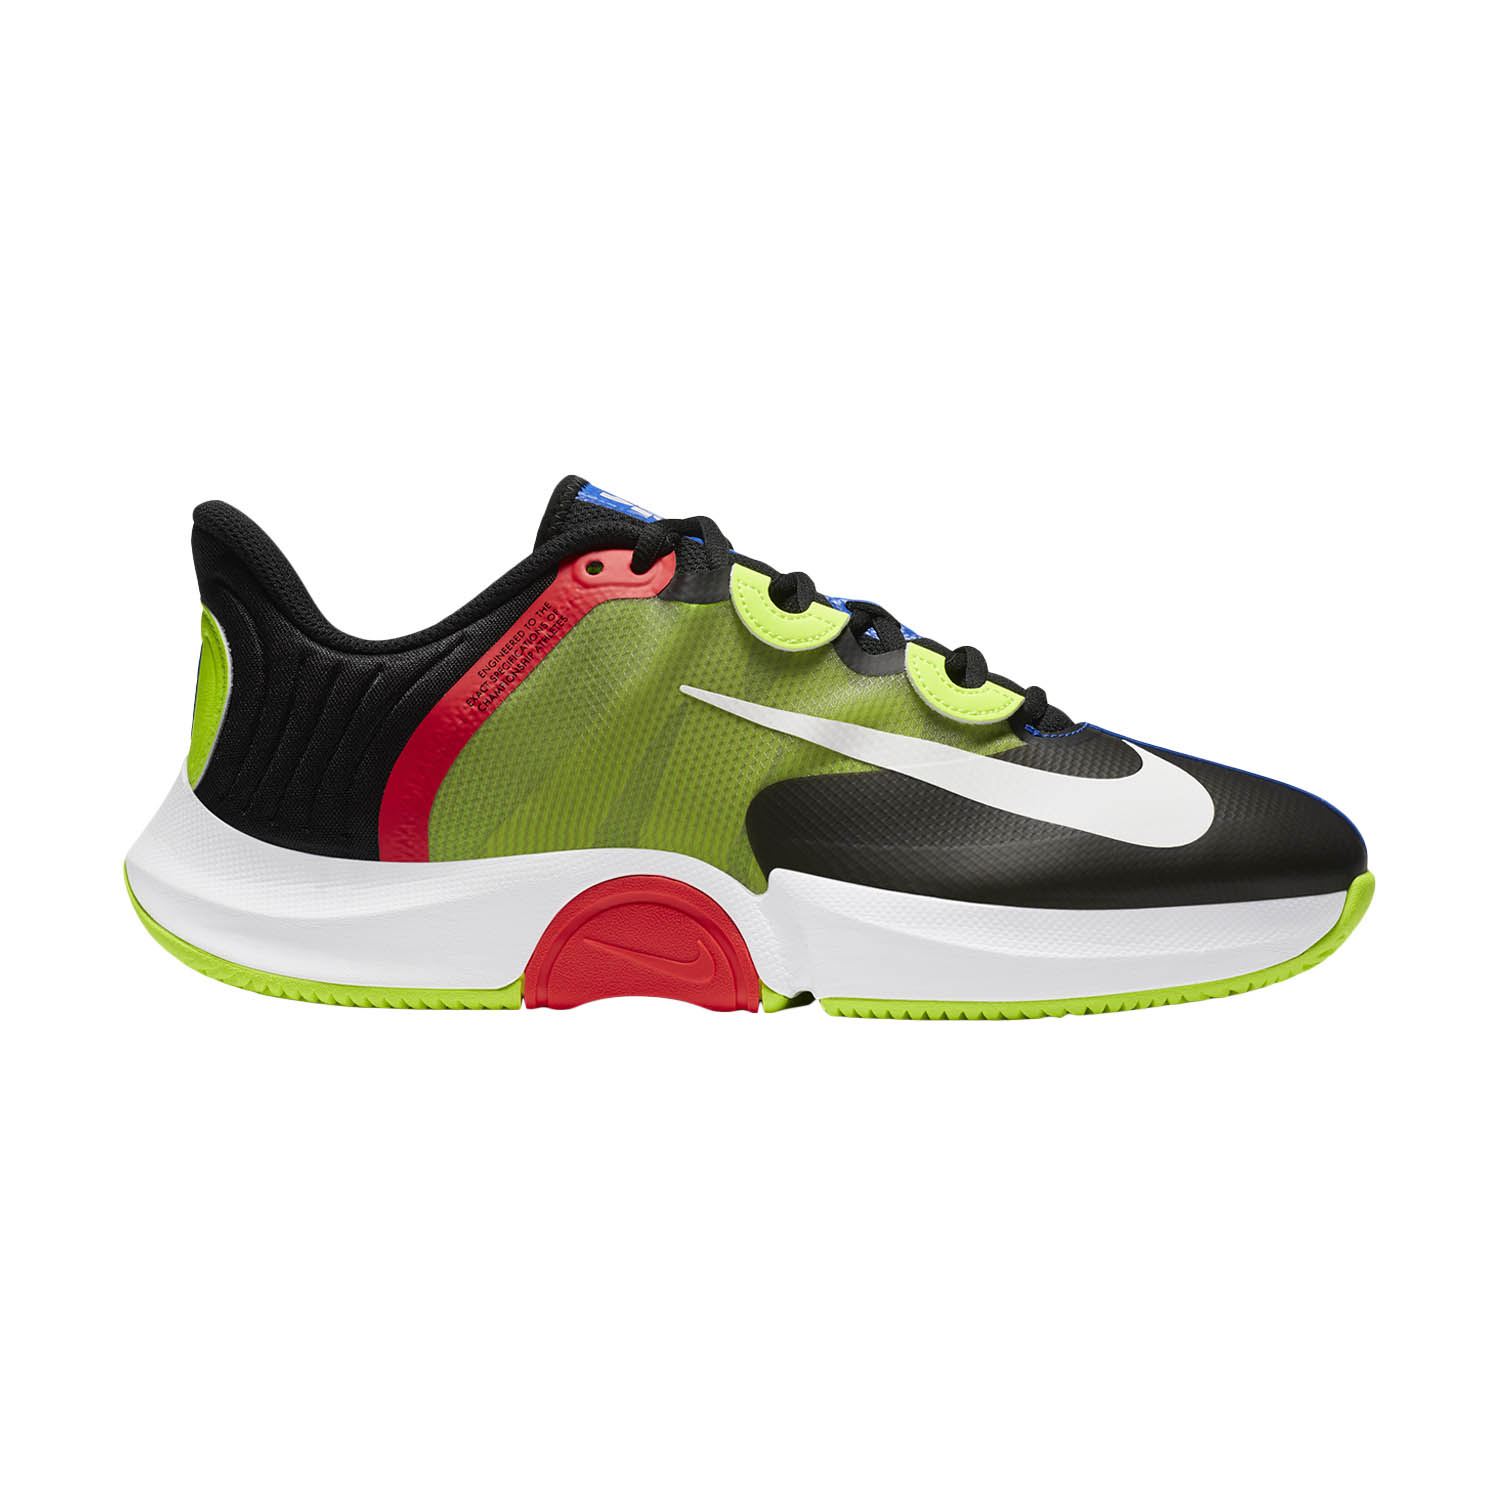 Nike Air Zoom GP Turbo HC Scarpe da Tennis Uomo - Black